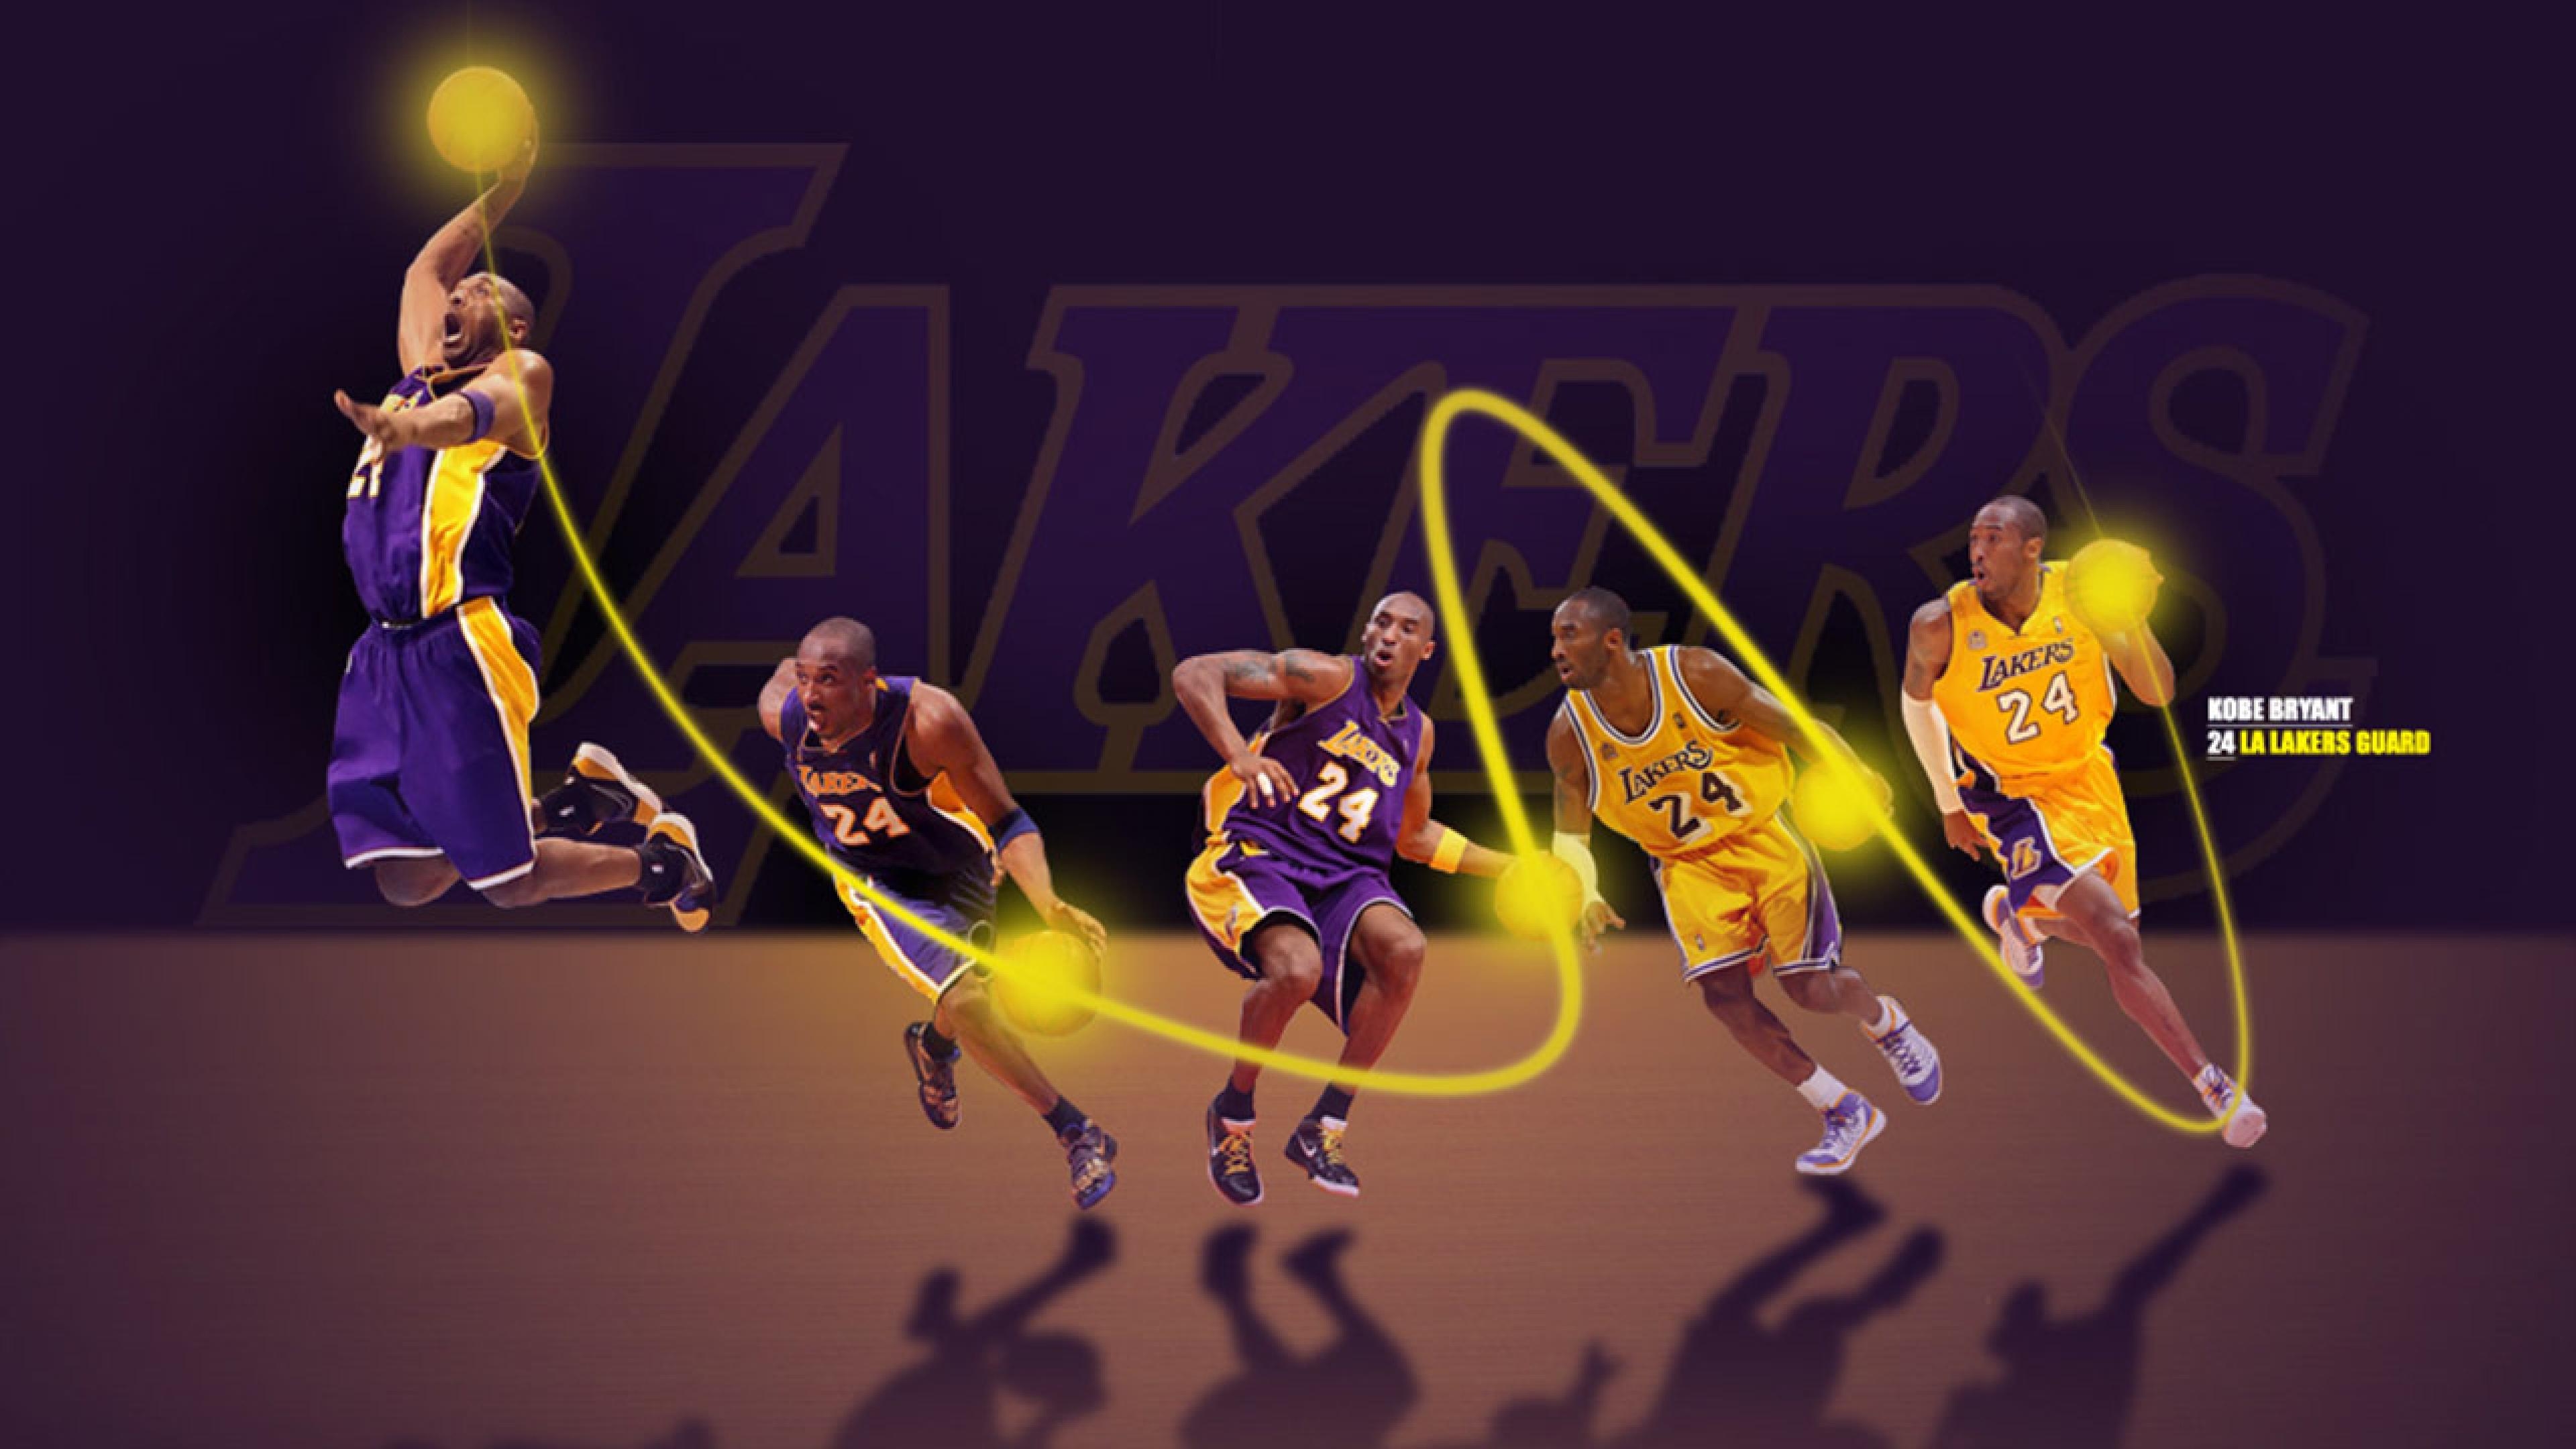 Los Angeles Lakers HD wallpapers, Desktop wallpaper - most viewed